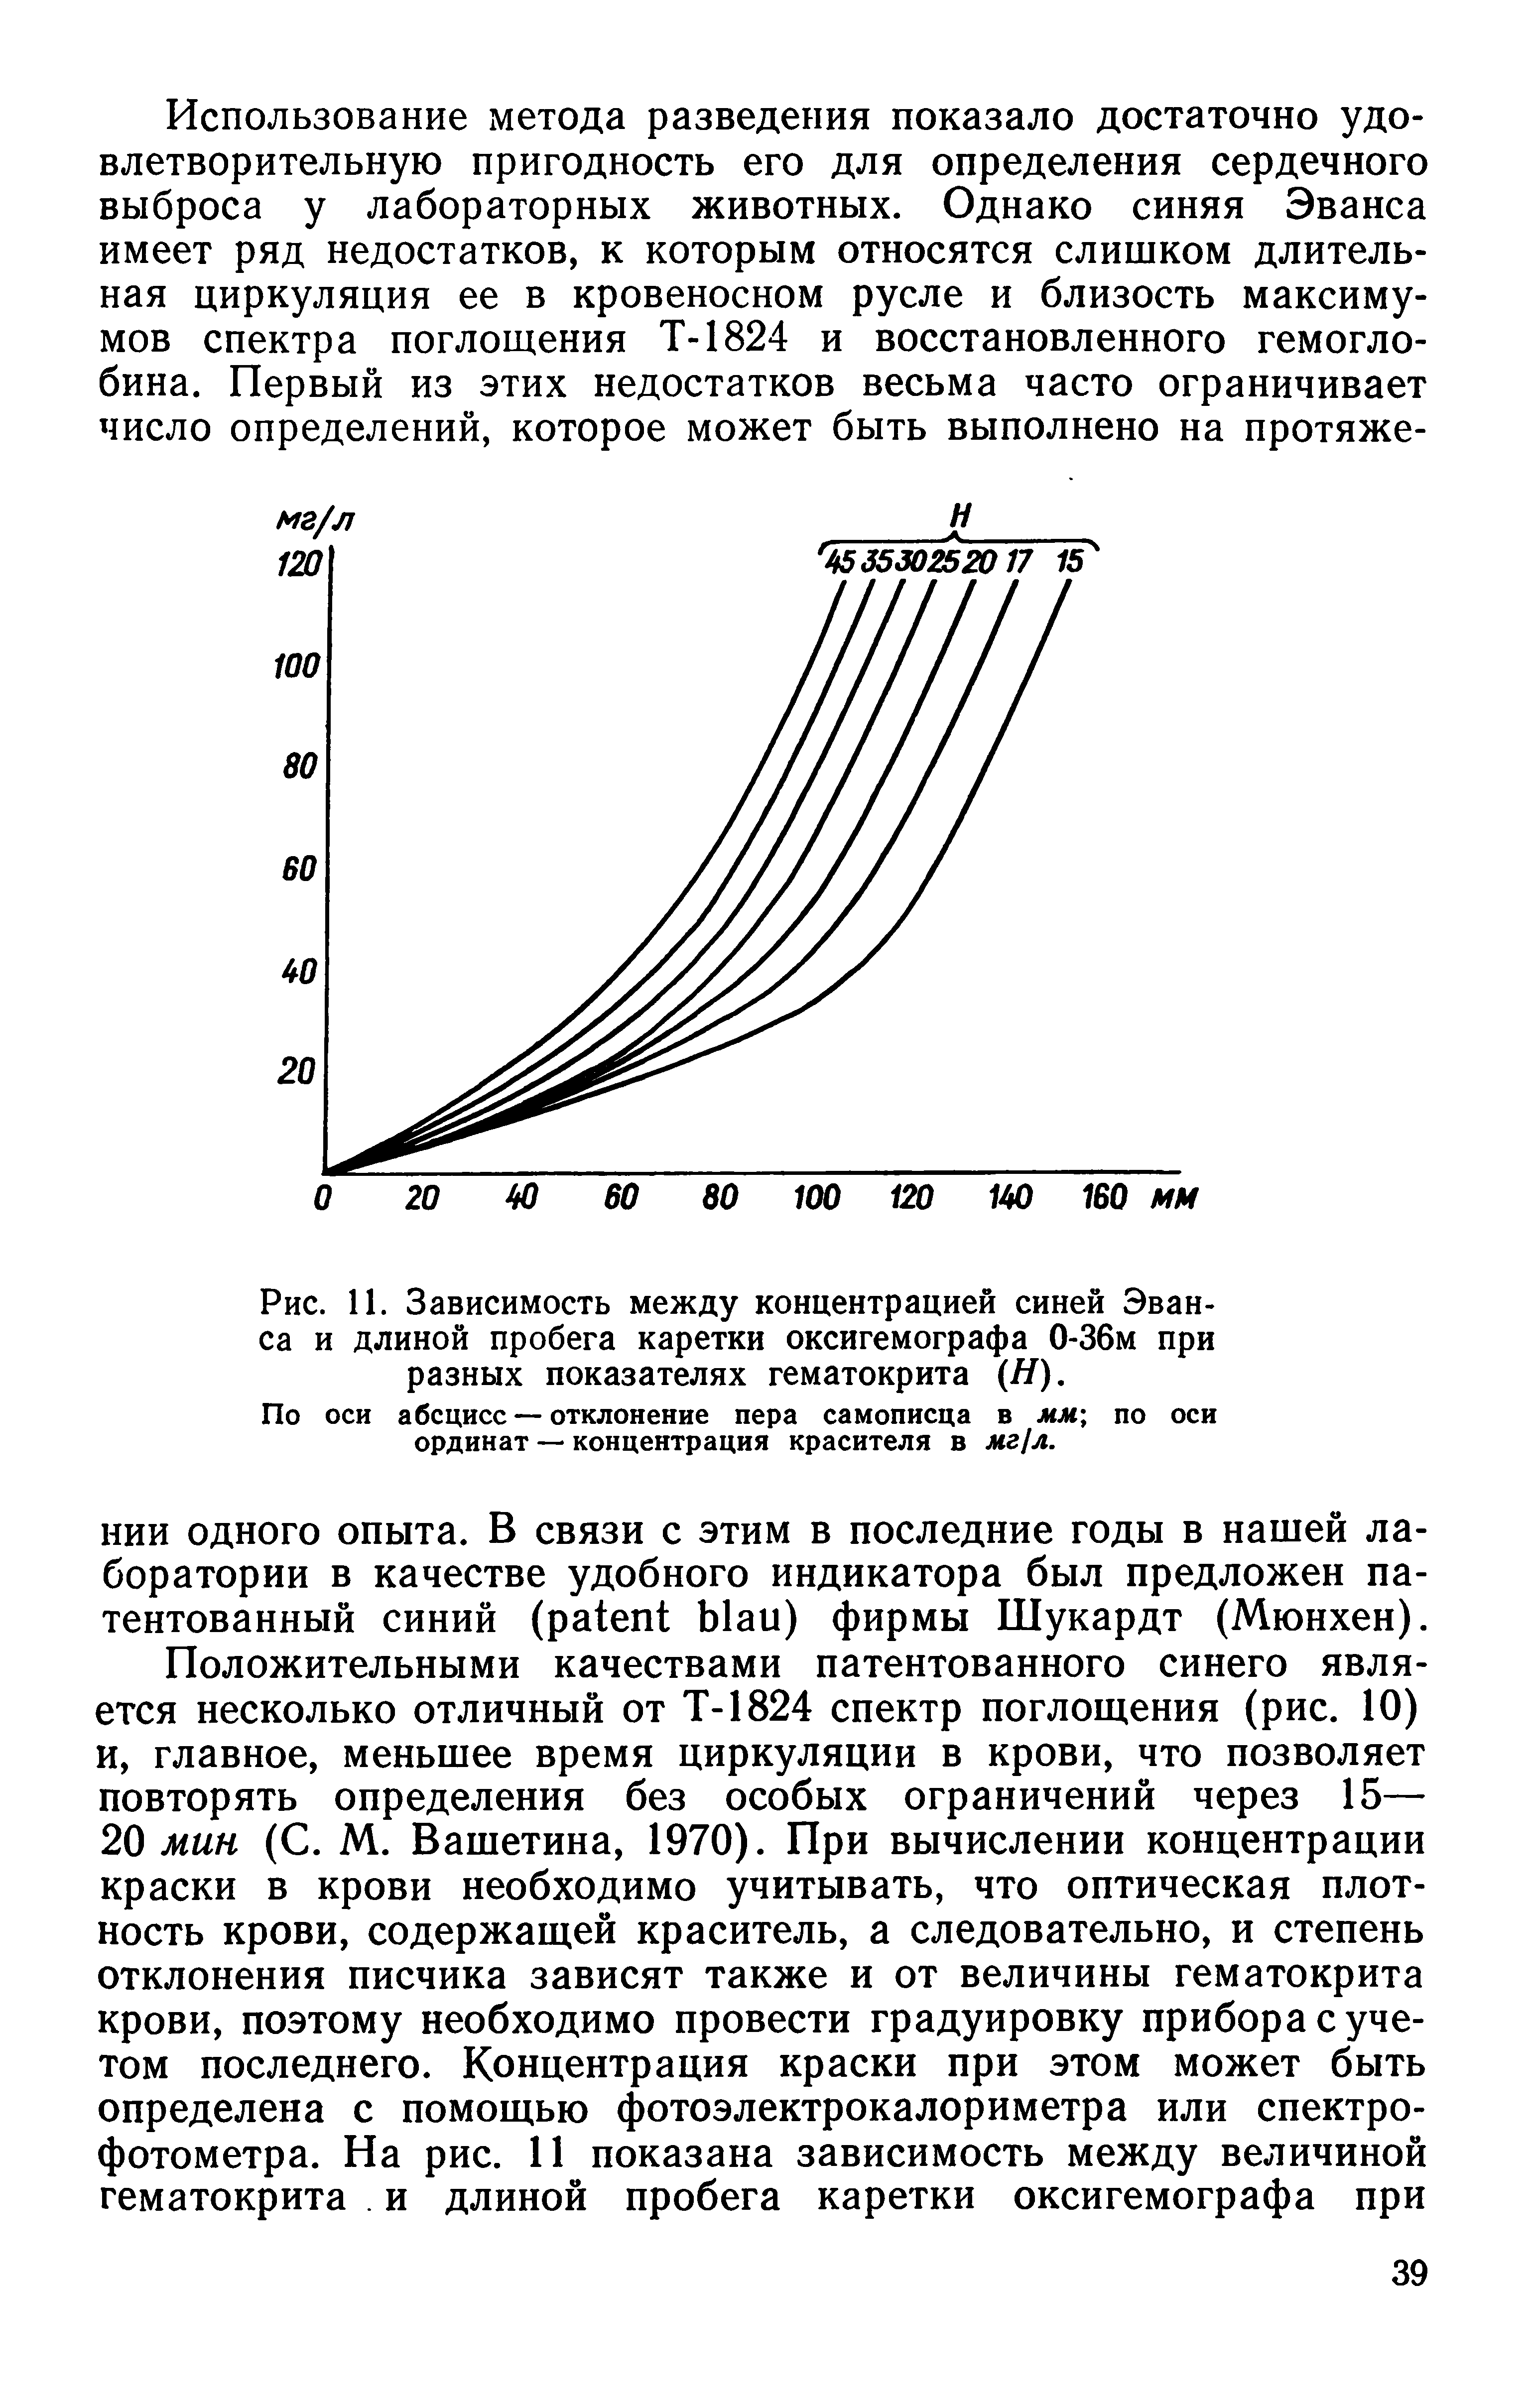 Рис. 11. Зависимость между концентрацией синей Эванса и длиной пробега каретки оксигемографа 0-36м при разных показателях гематокрита (Я).